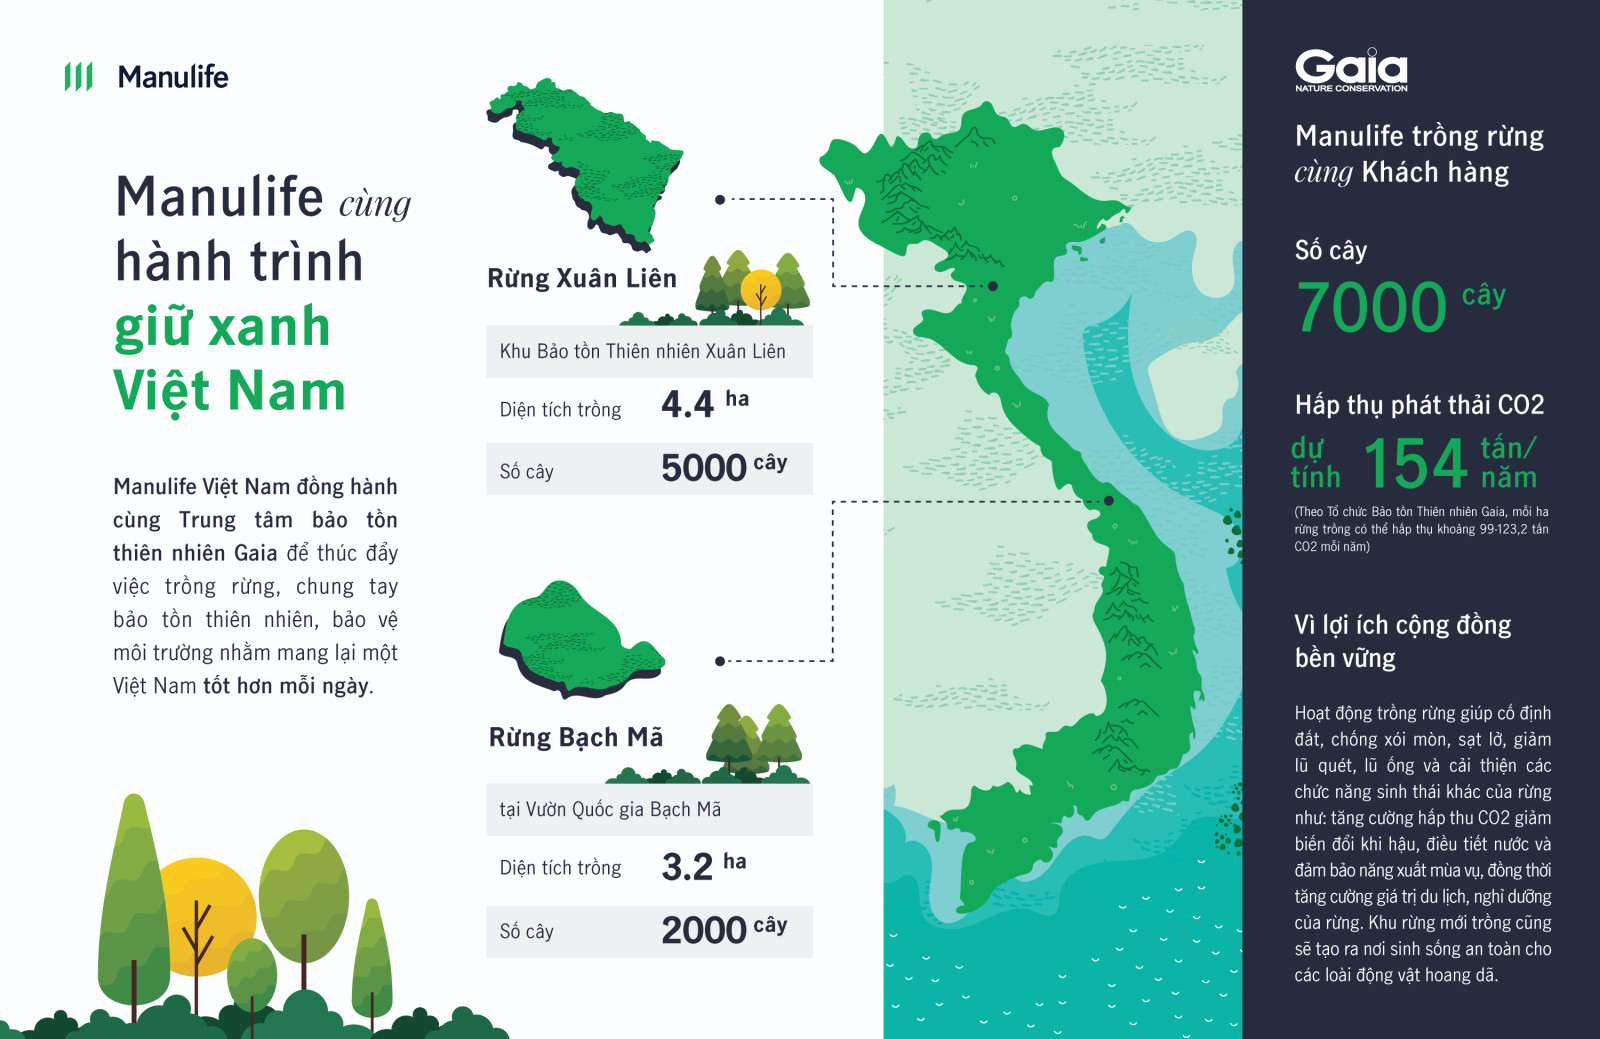 Manulife Việt Nam cùng khách hàng trồng rừng, hướng tới tương lai ...